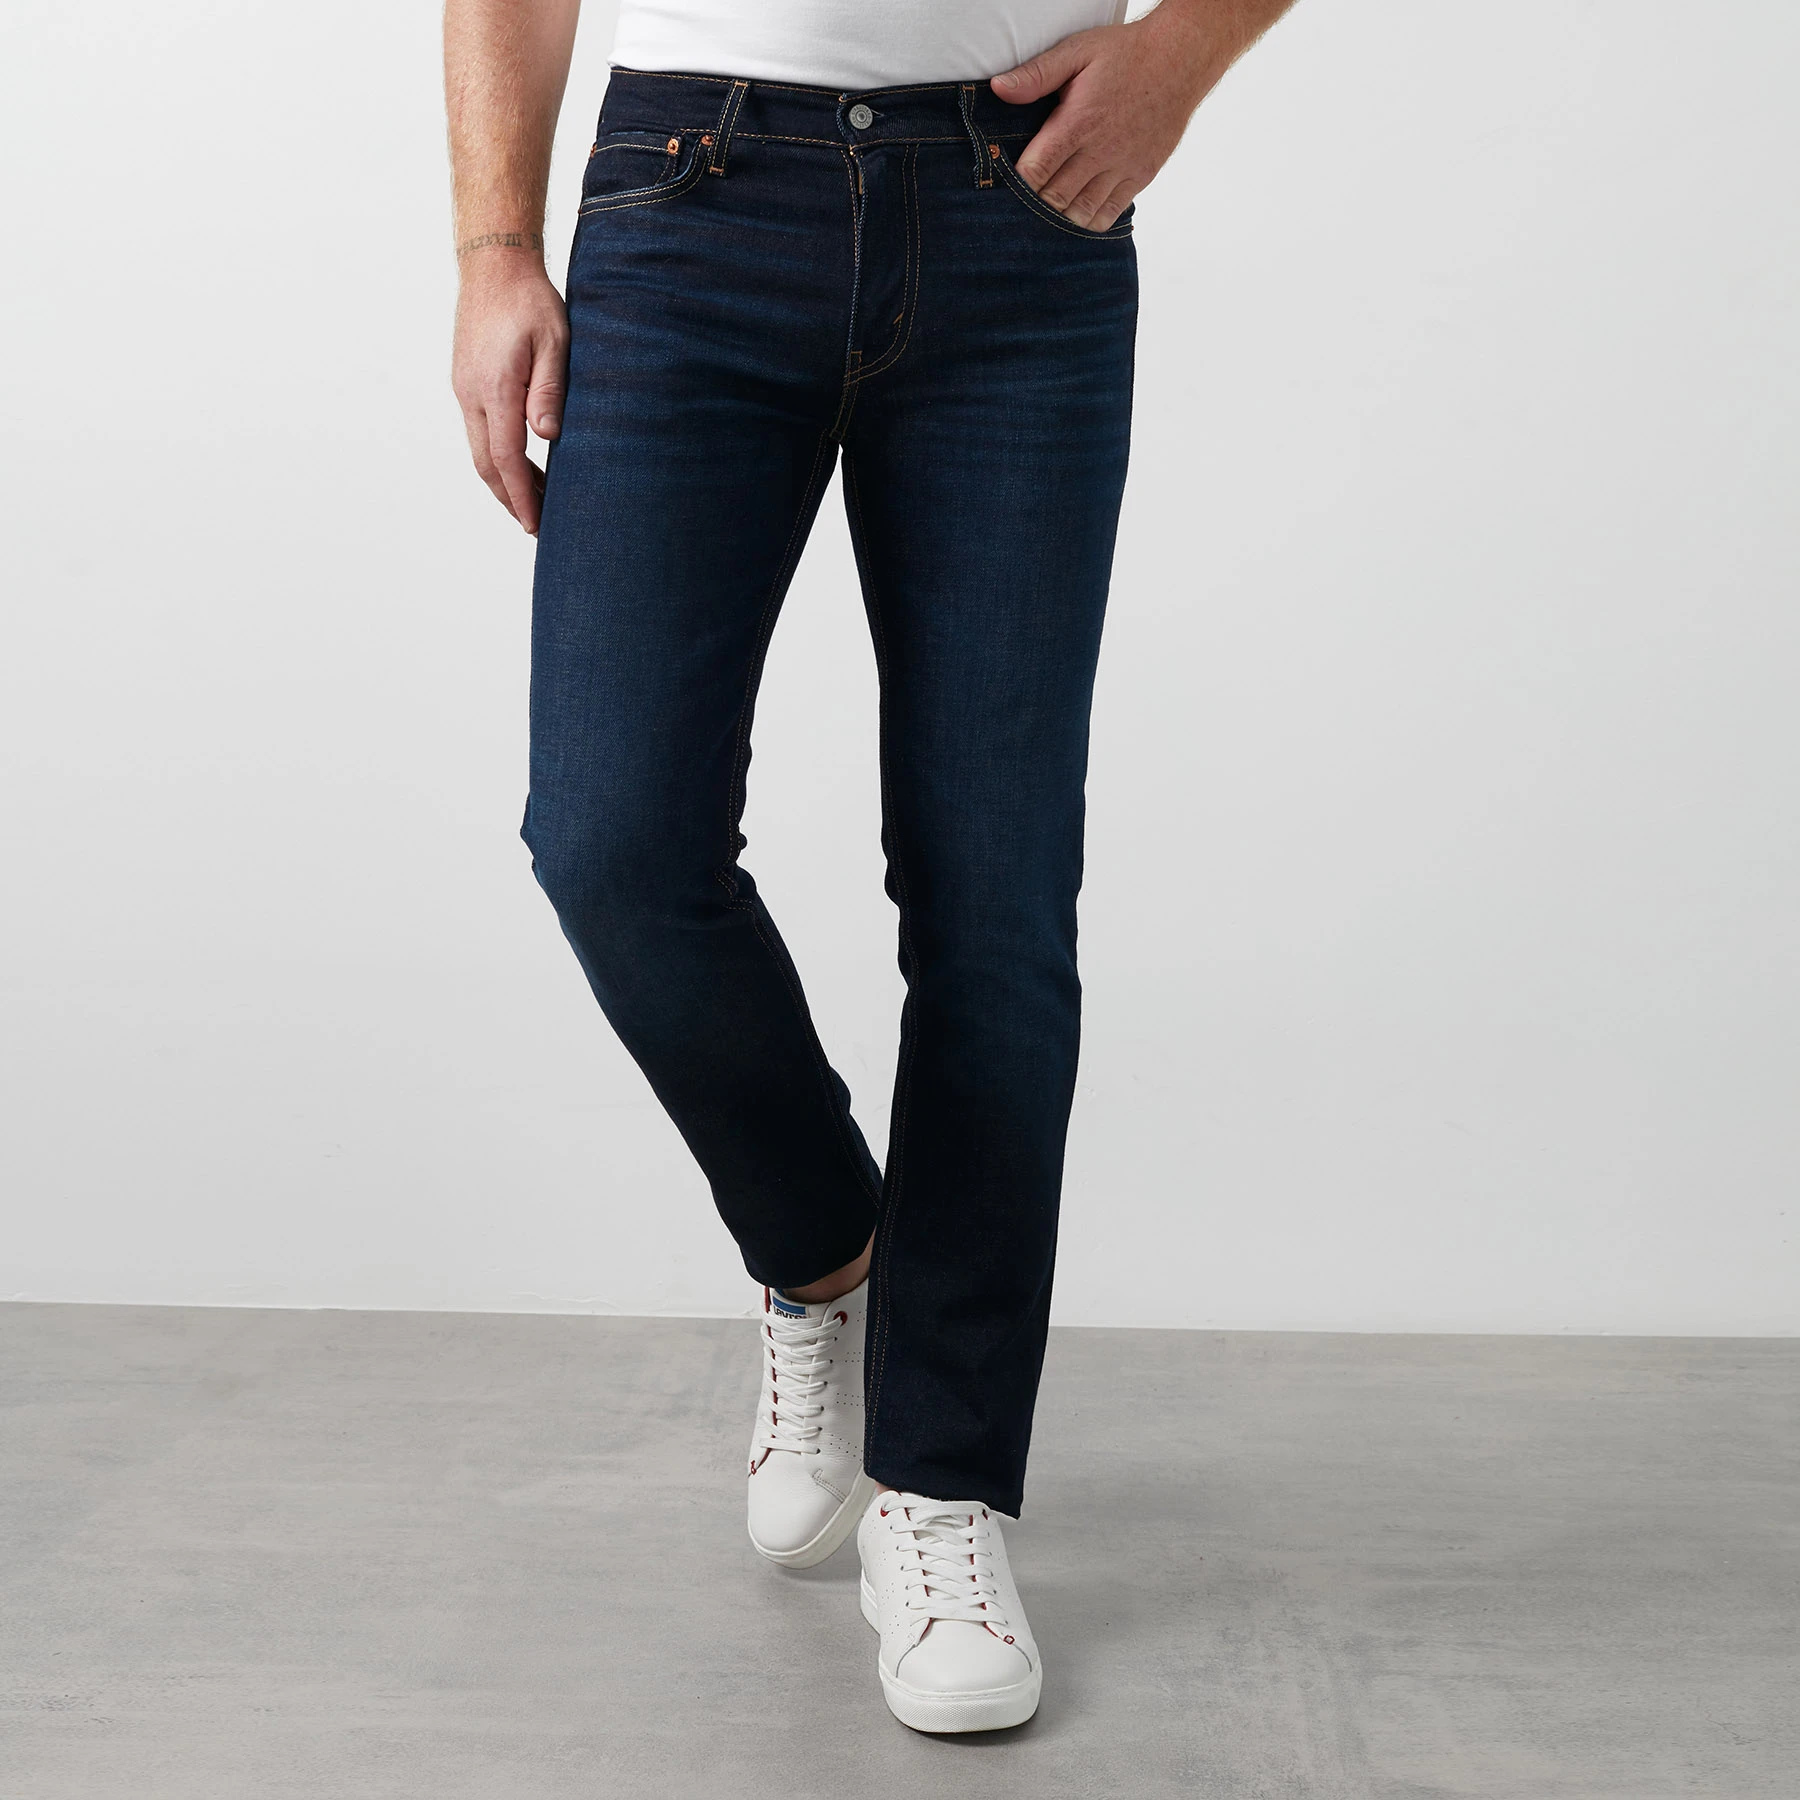 Levi's 511 algodón pantalones vaqueros de los pantalones Jeans 04511|Pantalones vaqueros| AliExpress